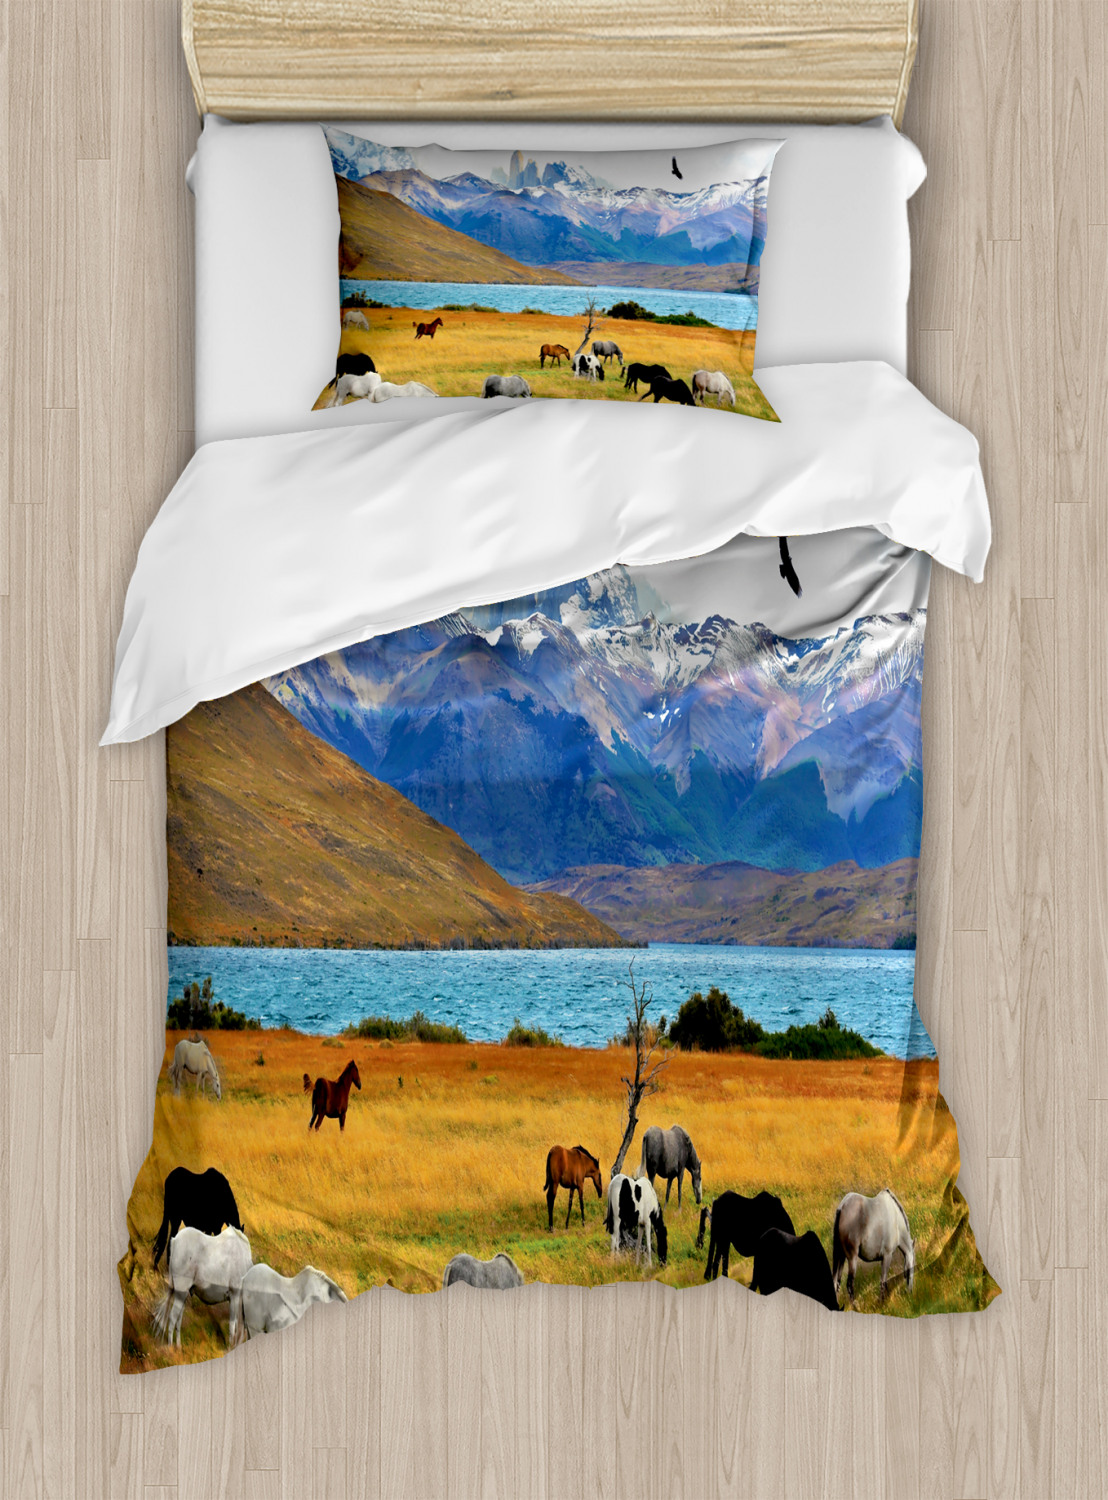 Horse Quilted Bedspread & Pillow Shams Set Landscape Rural Scene Print 